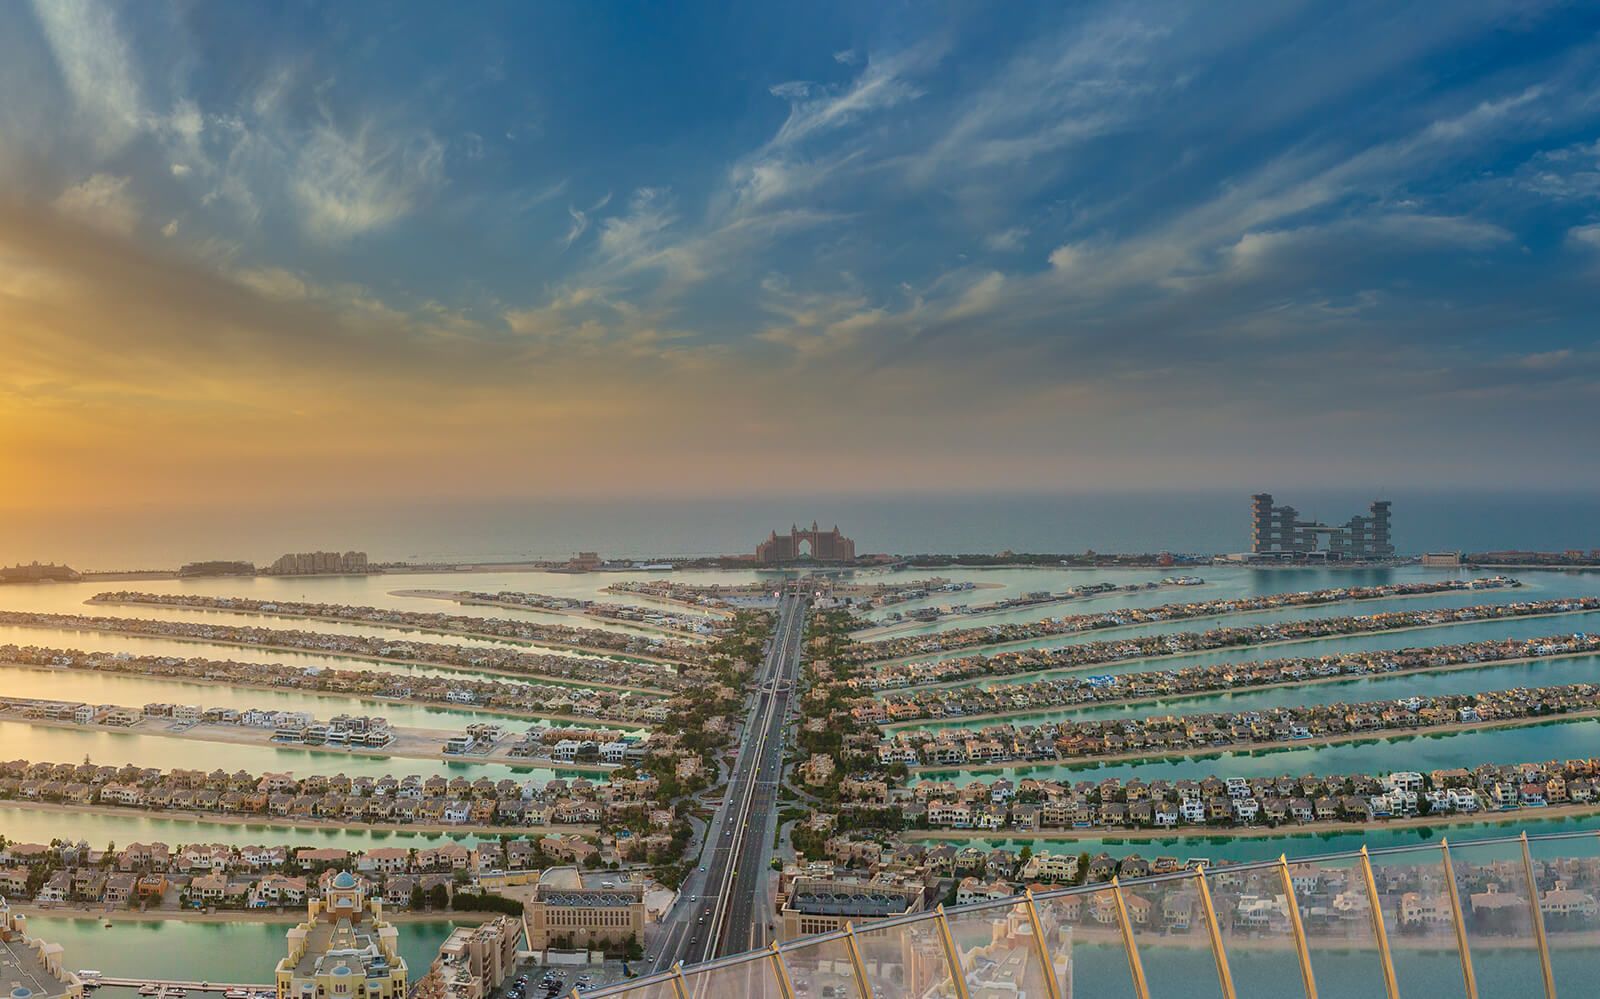 The View at The Palm Jumeirah Dubai